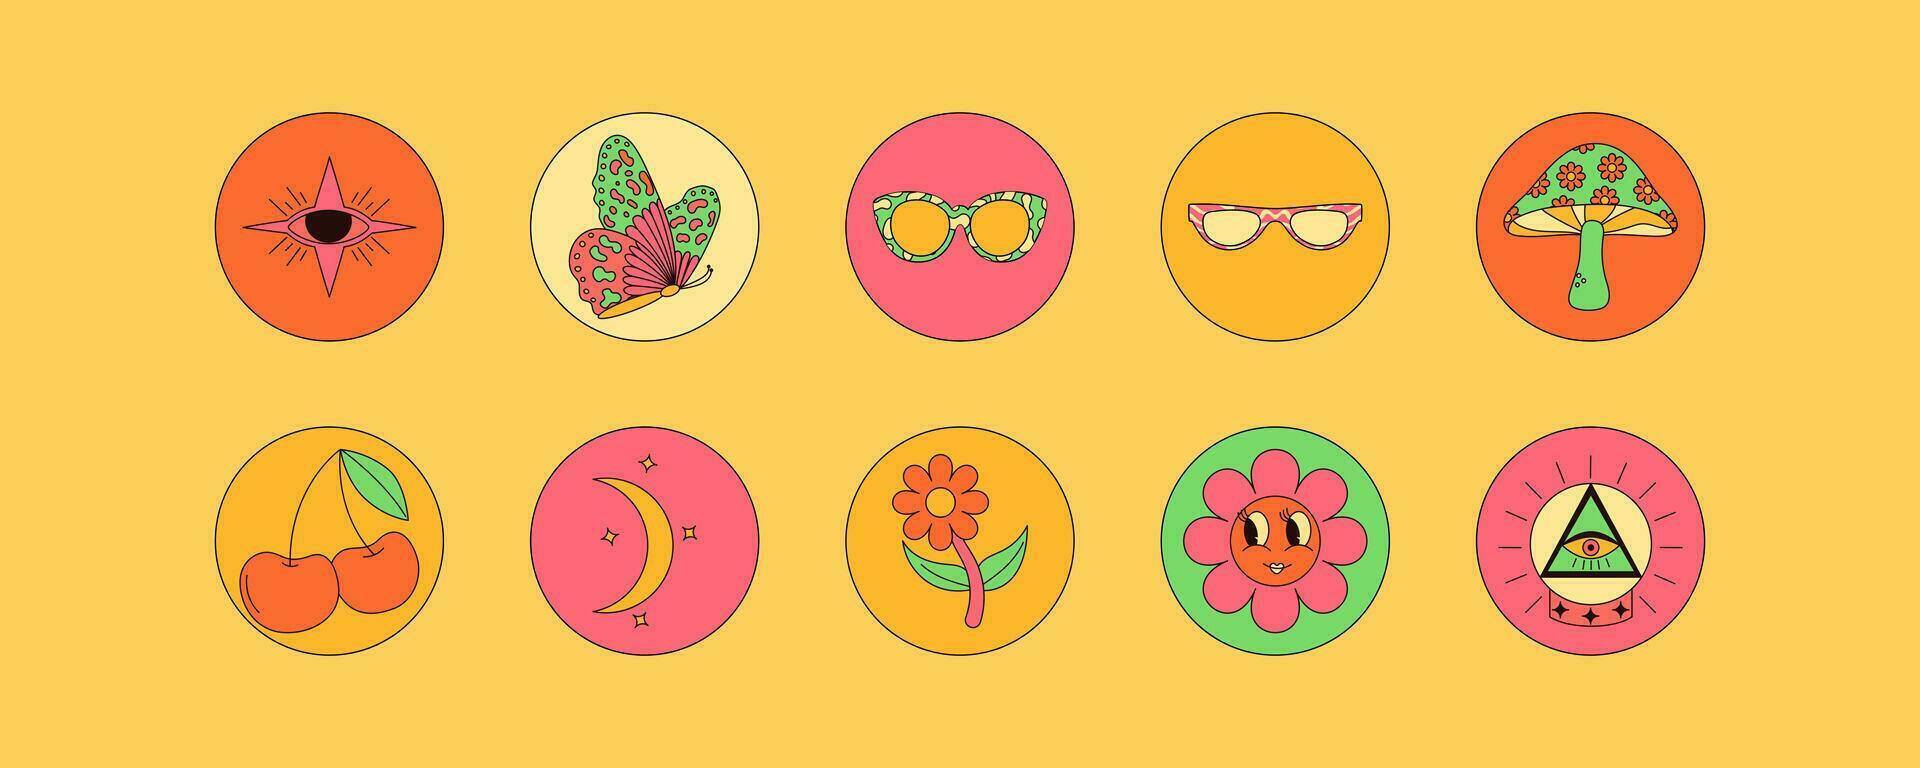 collection de ancien sensationnel éléments. champignons, fleur, cerise, yeux, des lunettes de soleil et plus. rétro vecteur art